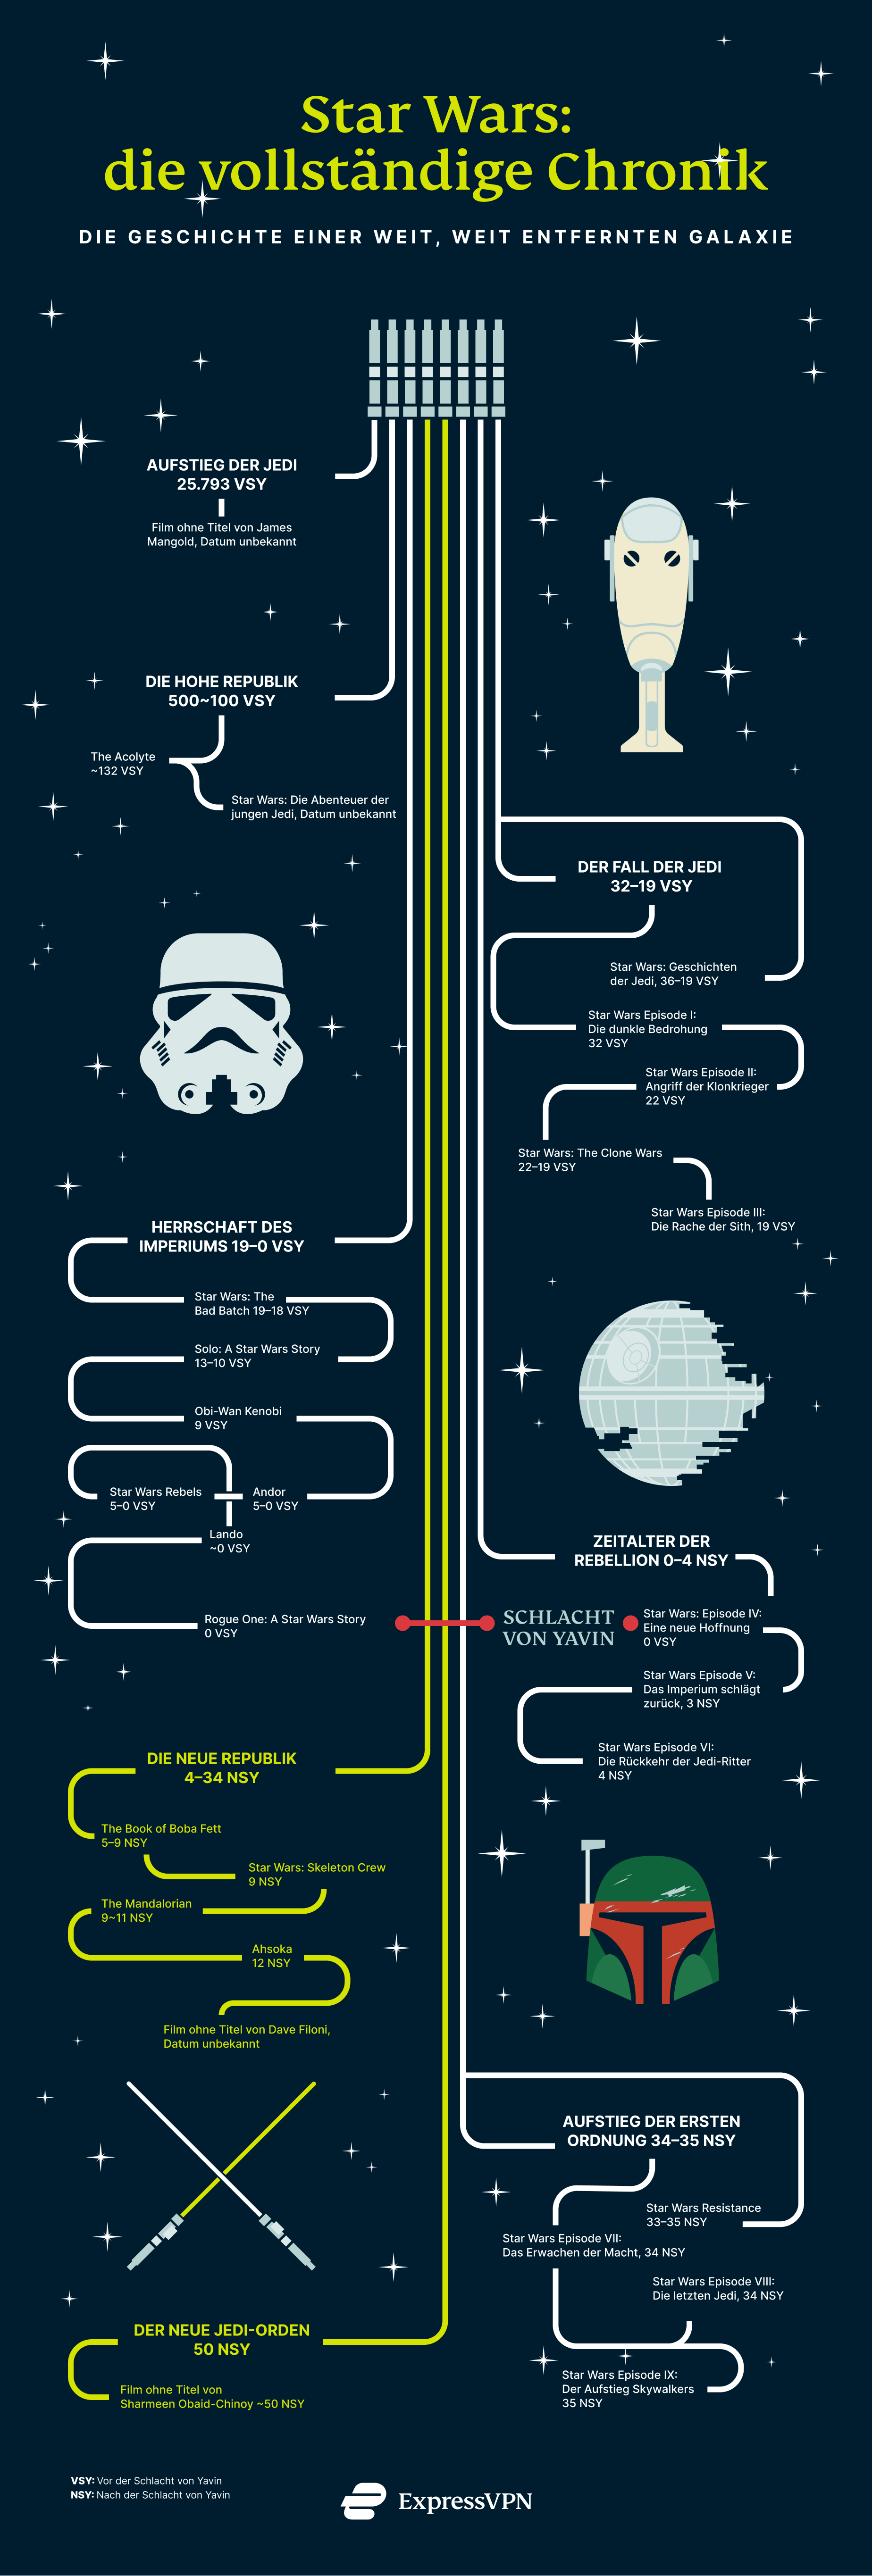 Star Wars chronologische Reihenfolge mit Serien und Filmen